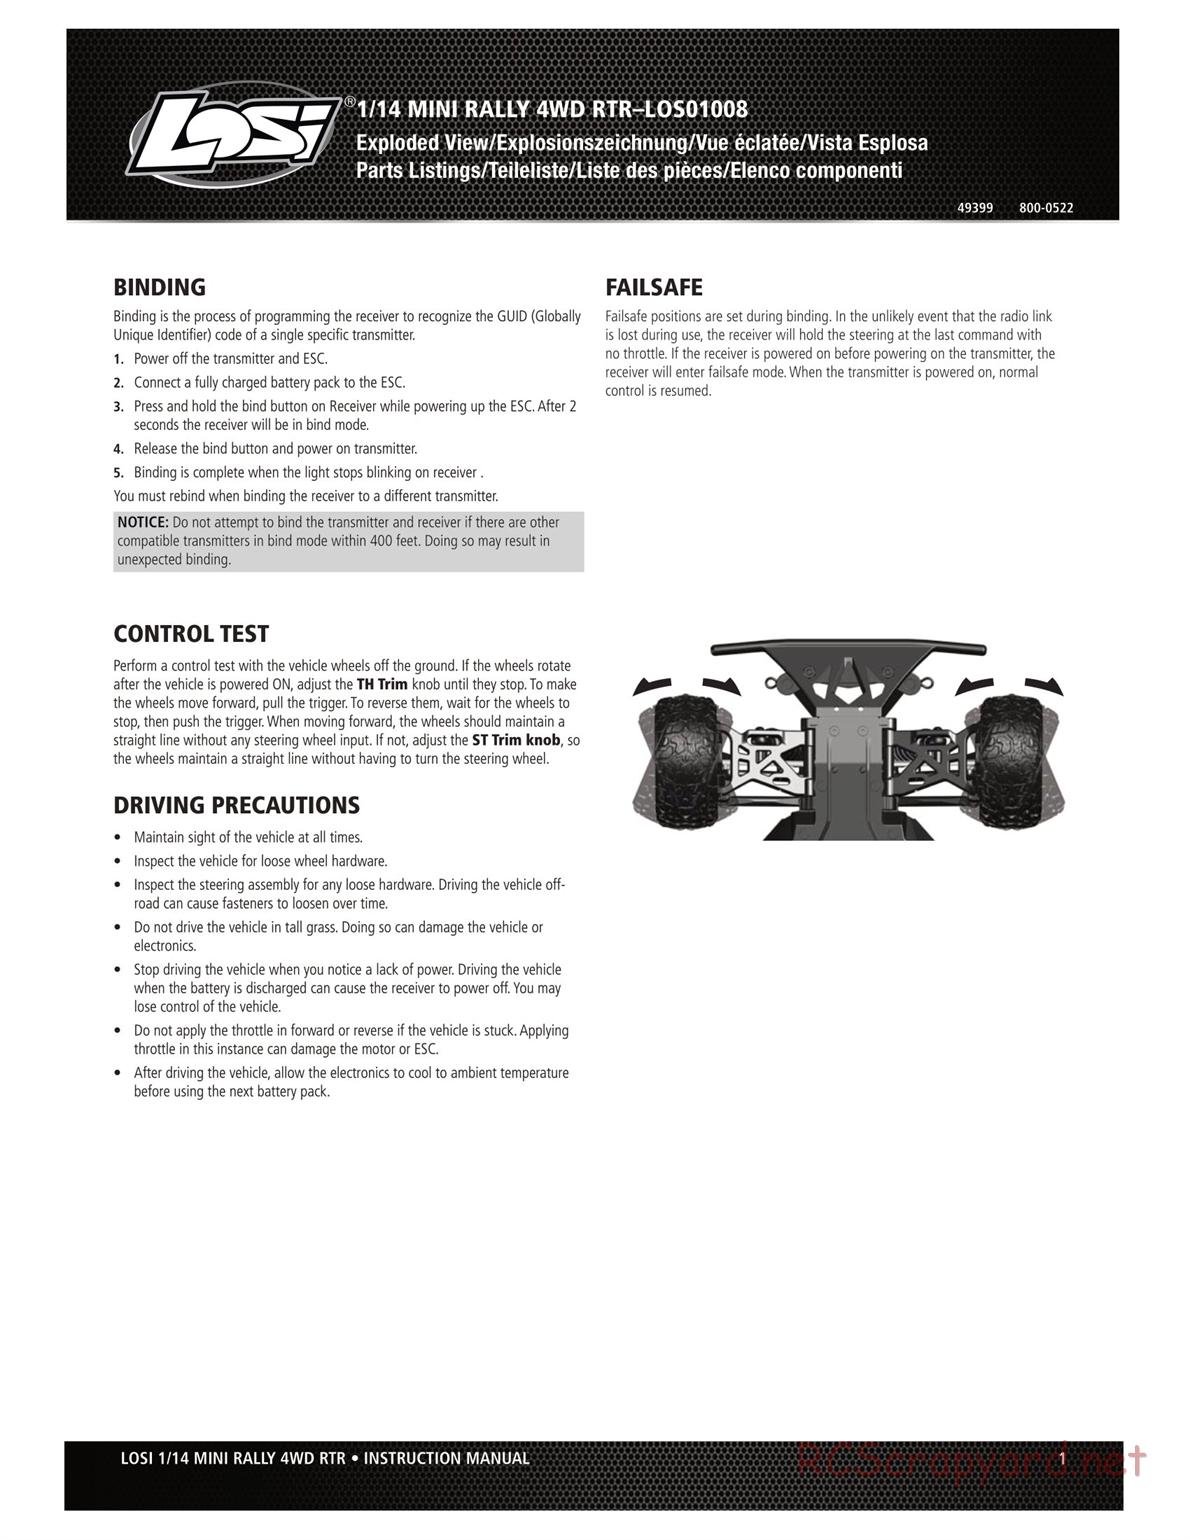 Team Losi - Mini Rally Car - Manual - Page 1